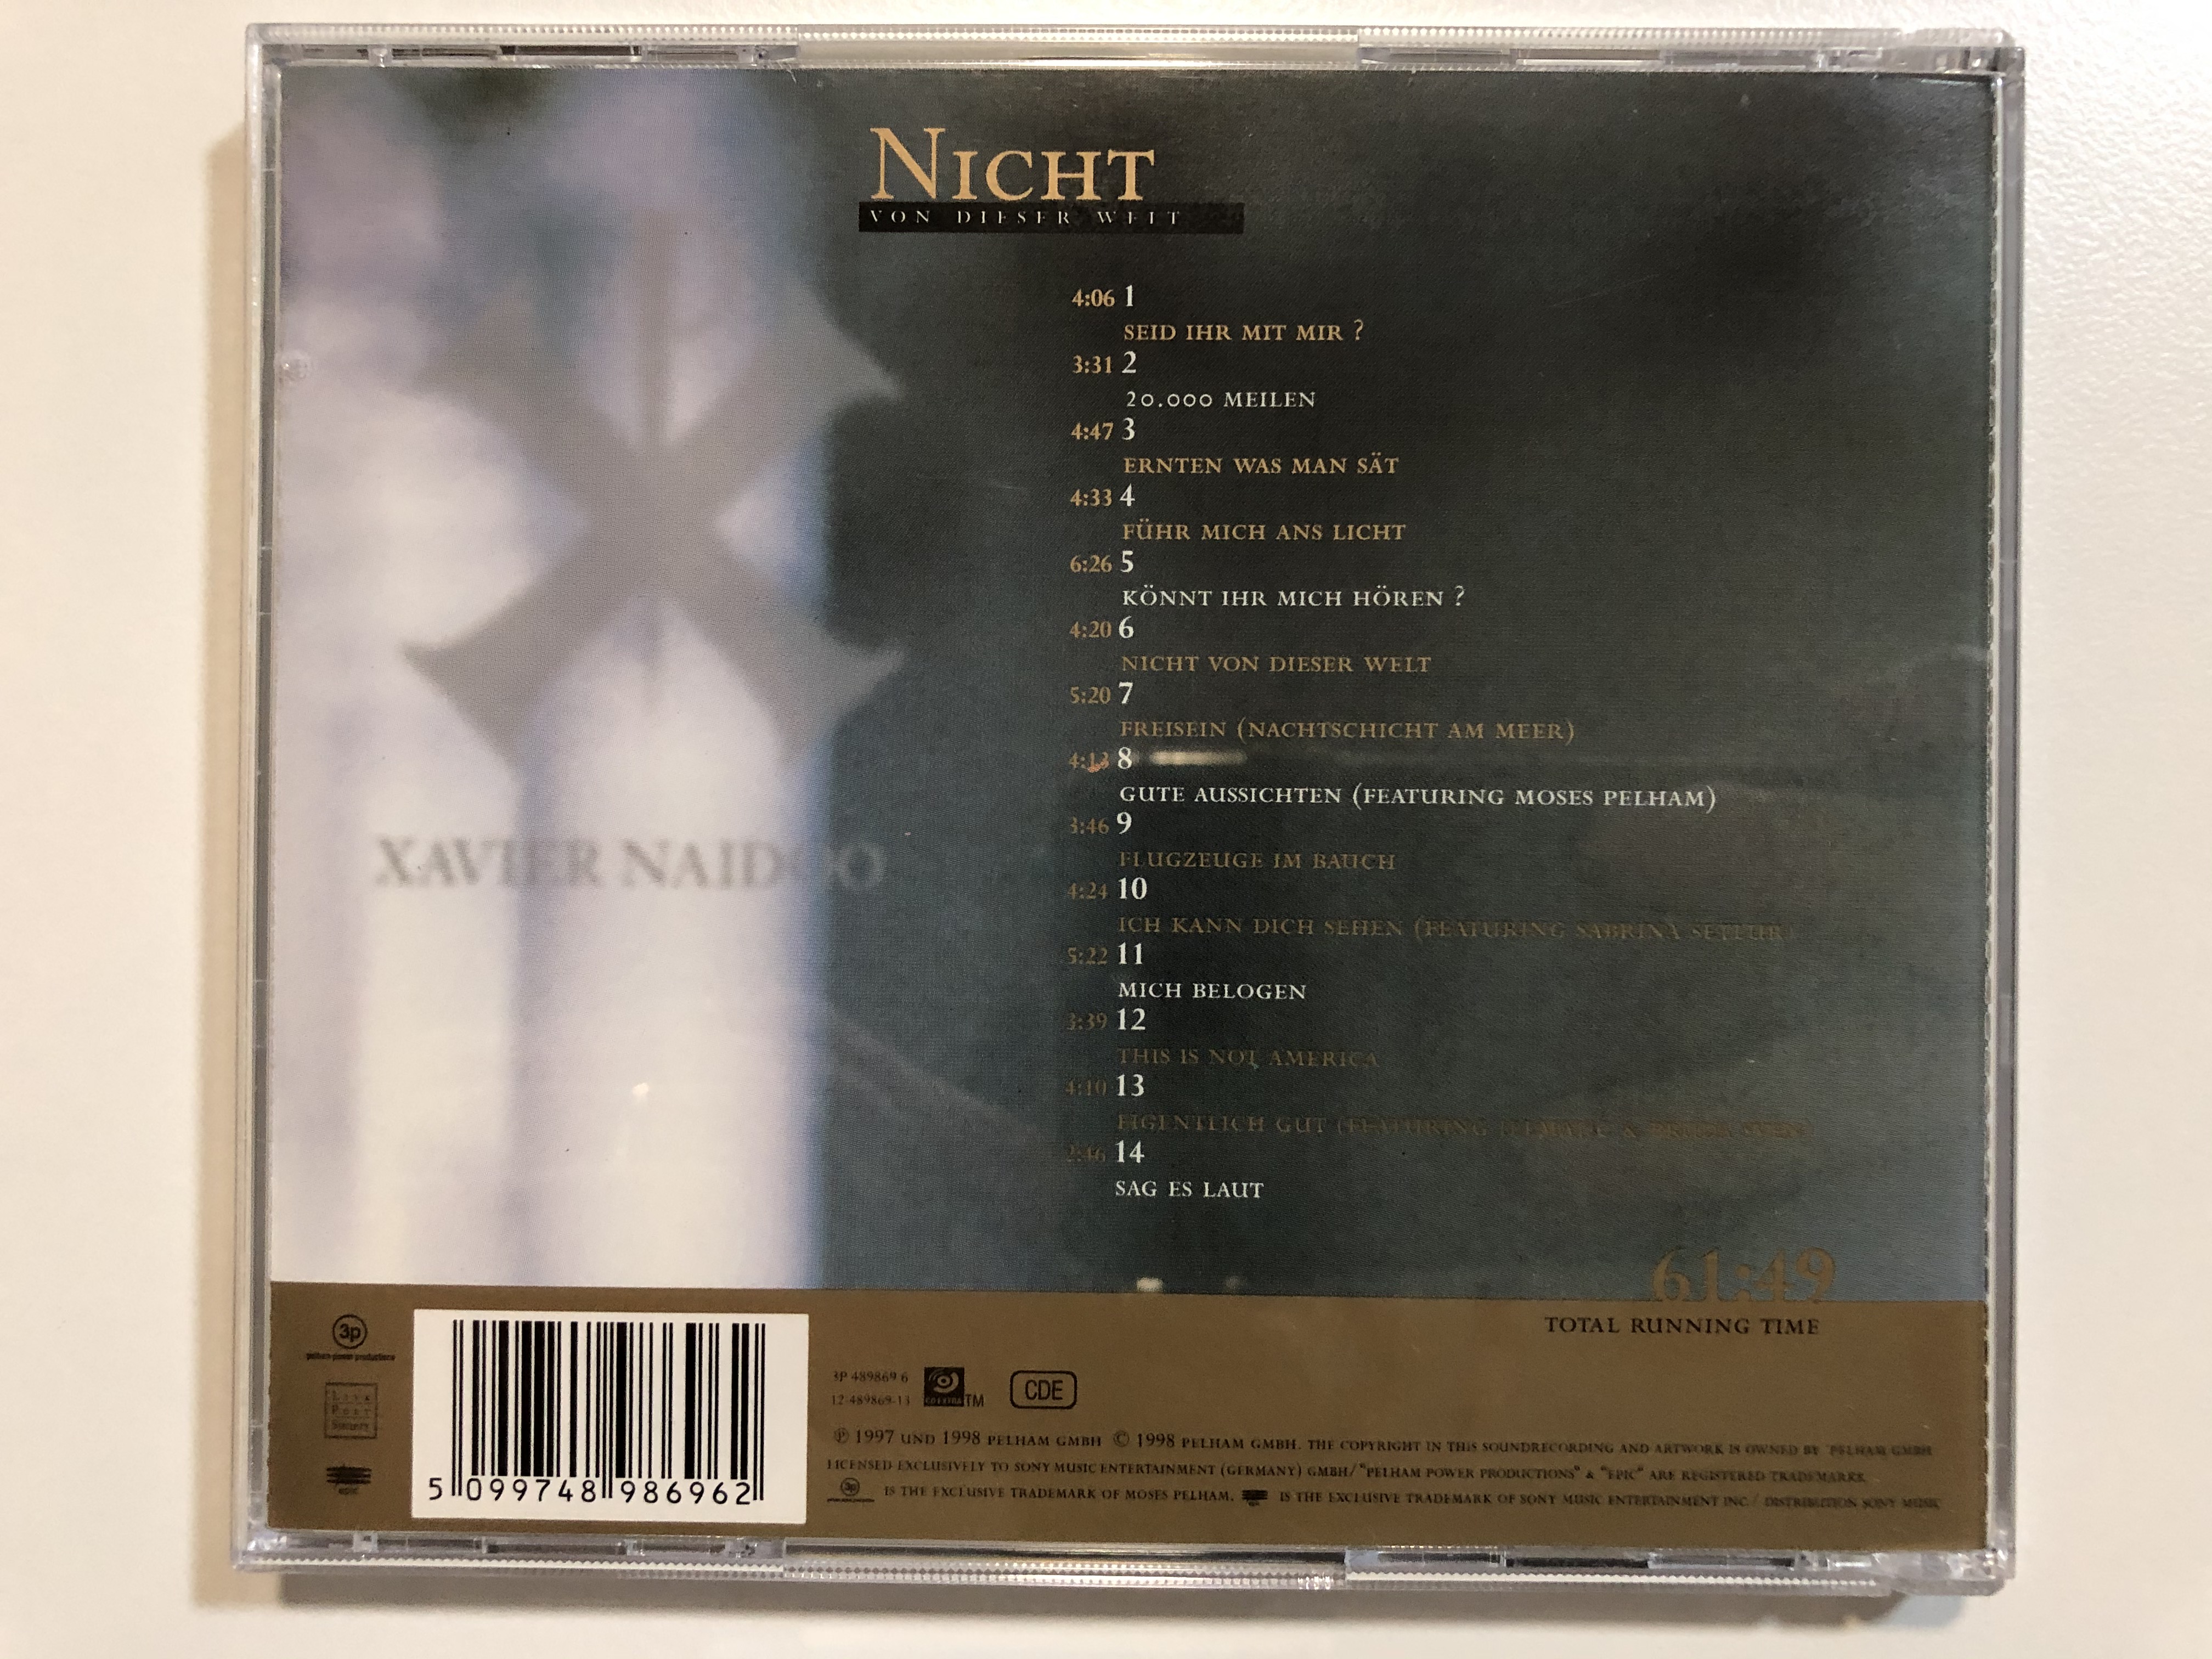 xavier-naidoo-nicht-von-dieser-welt-pelham-power-productions-audio-cd-1998-3p-489869-6-9-.jpg